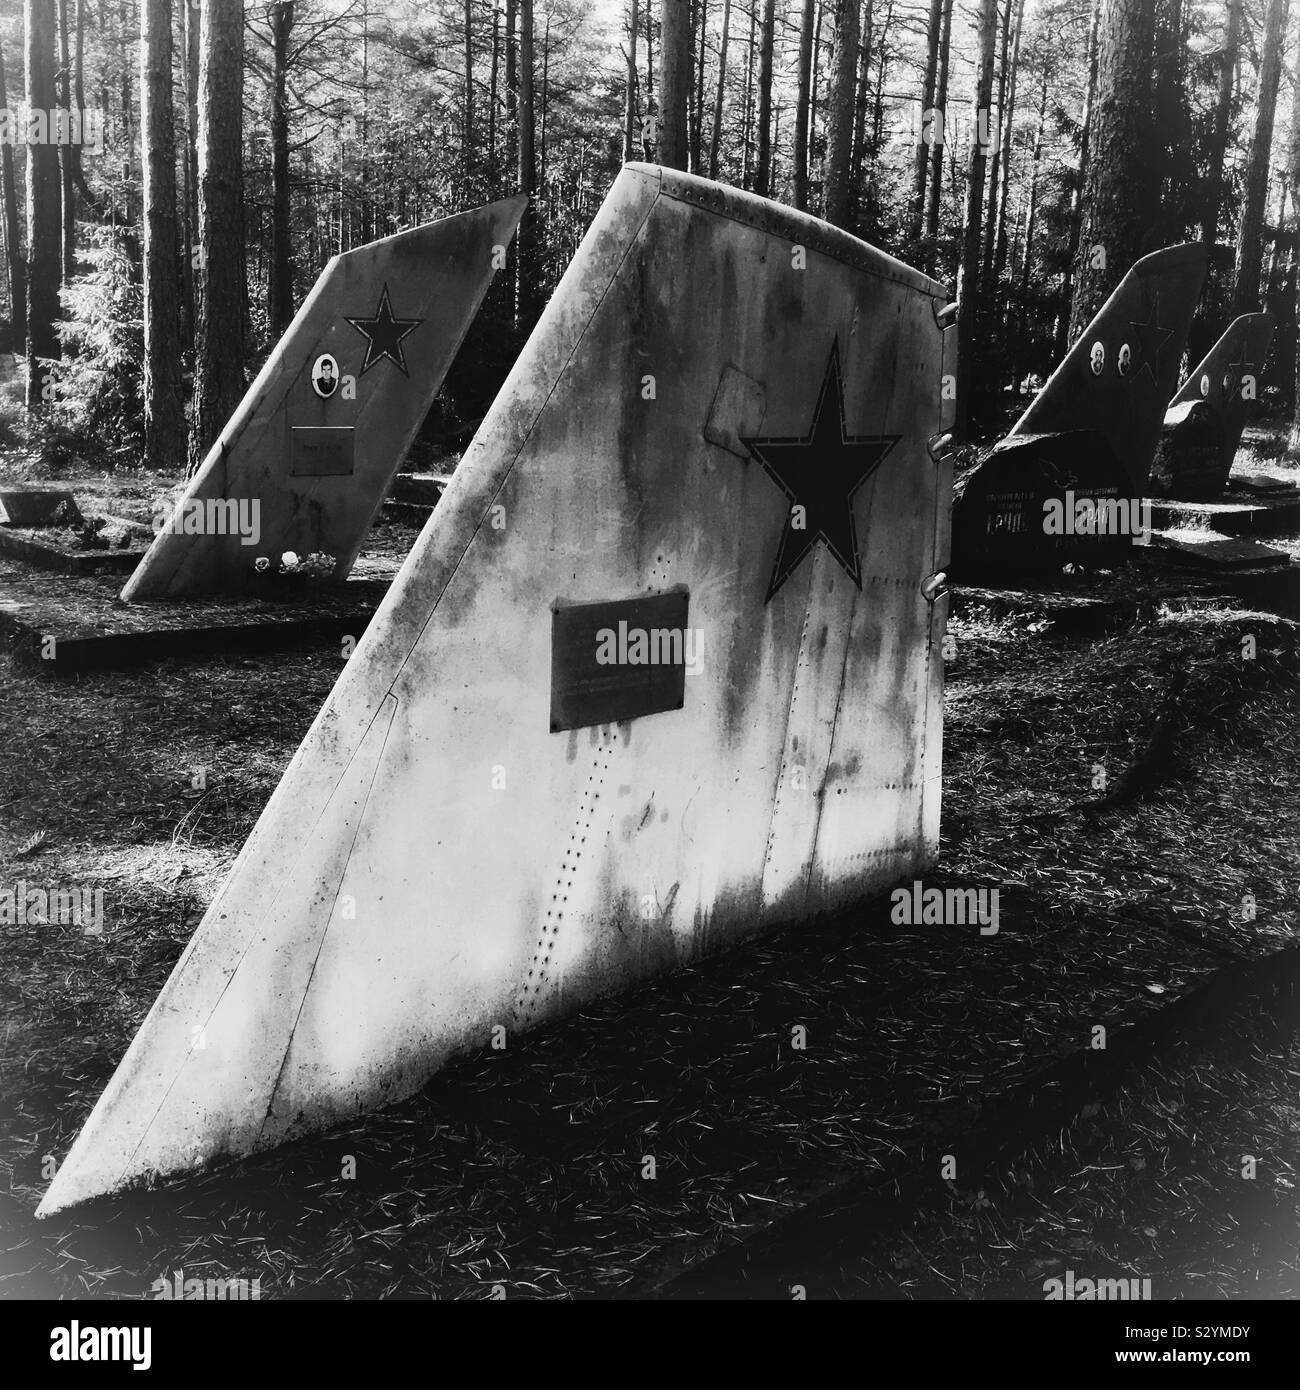 Amari Piloten Friedhof, ein gruseliges Sowjetischen Soldatenfriedhof in Estland mit Flugzeugen Schwanzflosse als ernste Markierungen Stockfoto